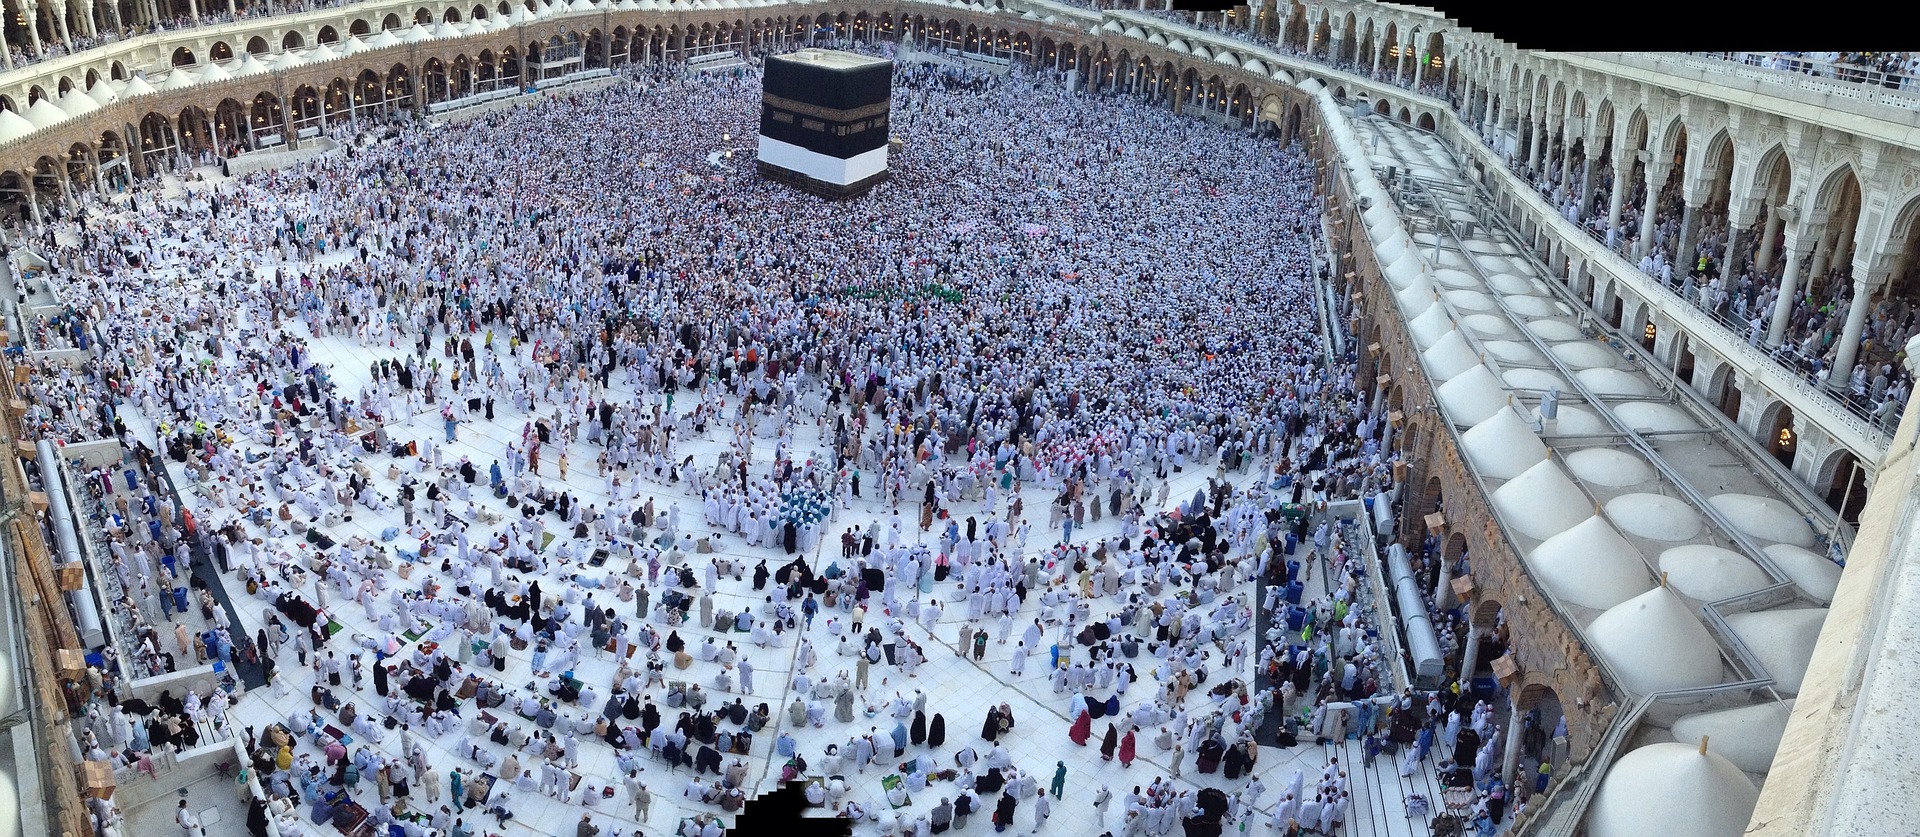 The Kaaba in Mecca, Saudi Arabia